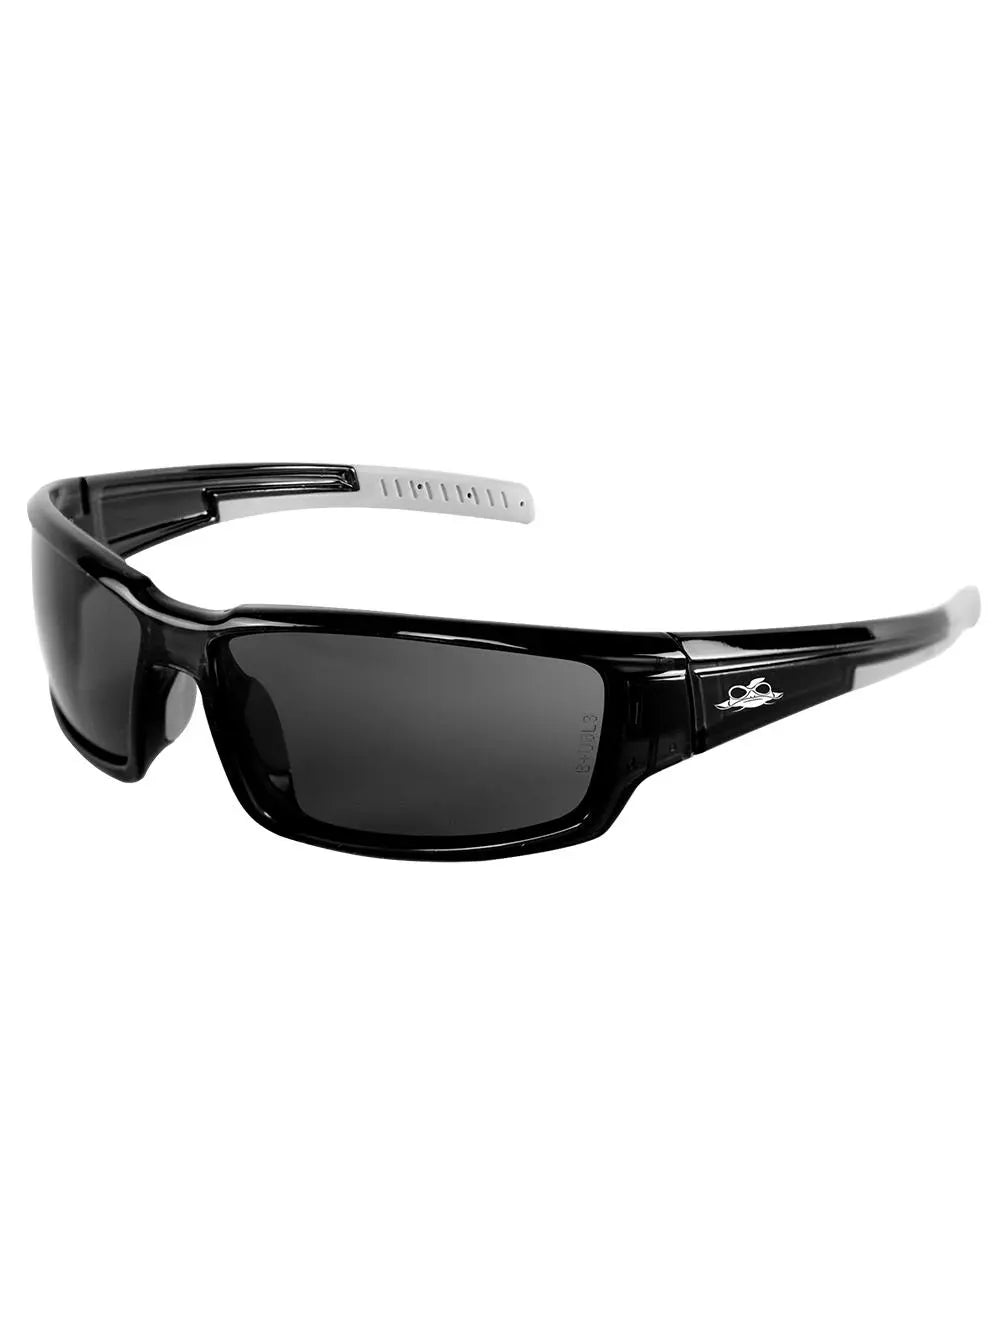 BULLHEAD SAFETY - Maki Anti Fog Safety Glasses, Smoke/Crystal Black